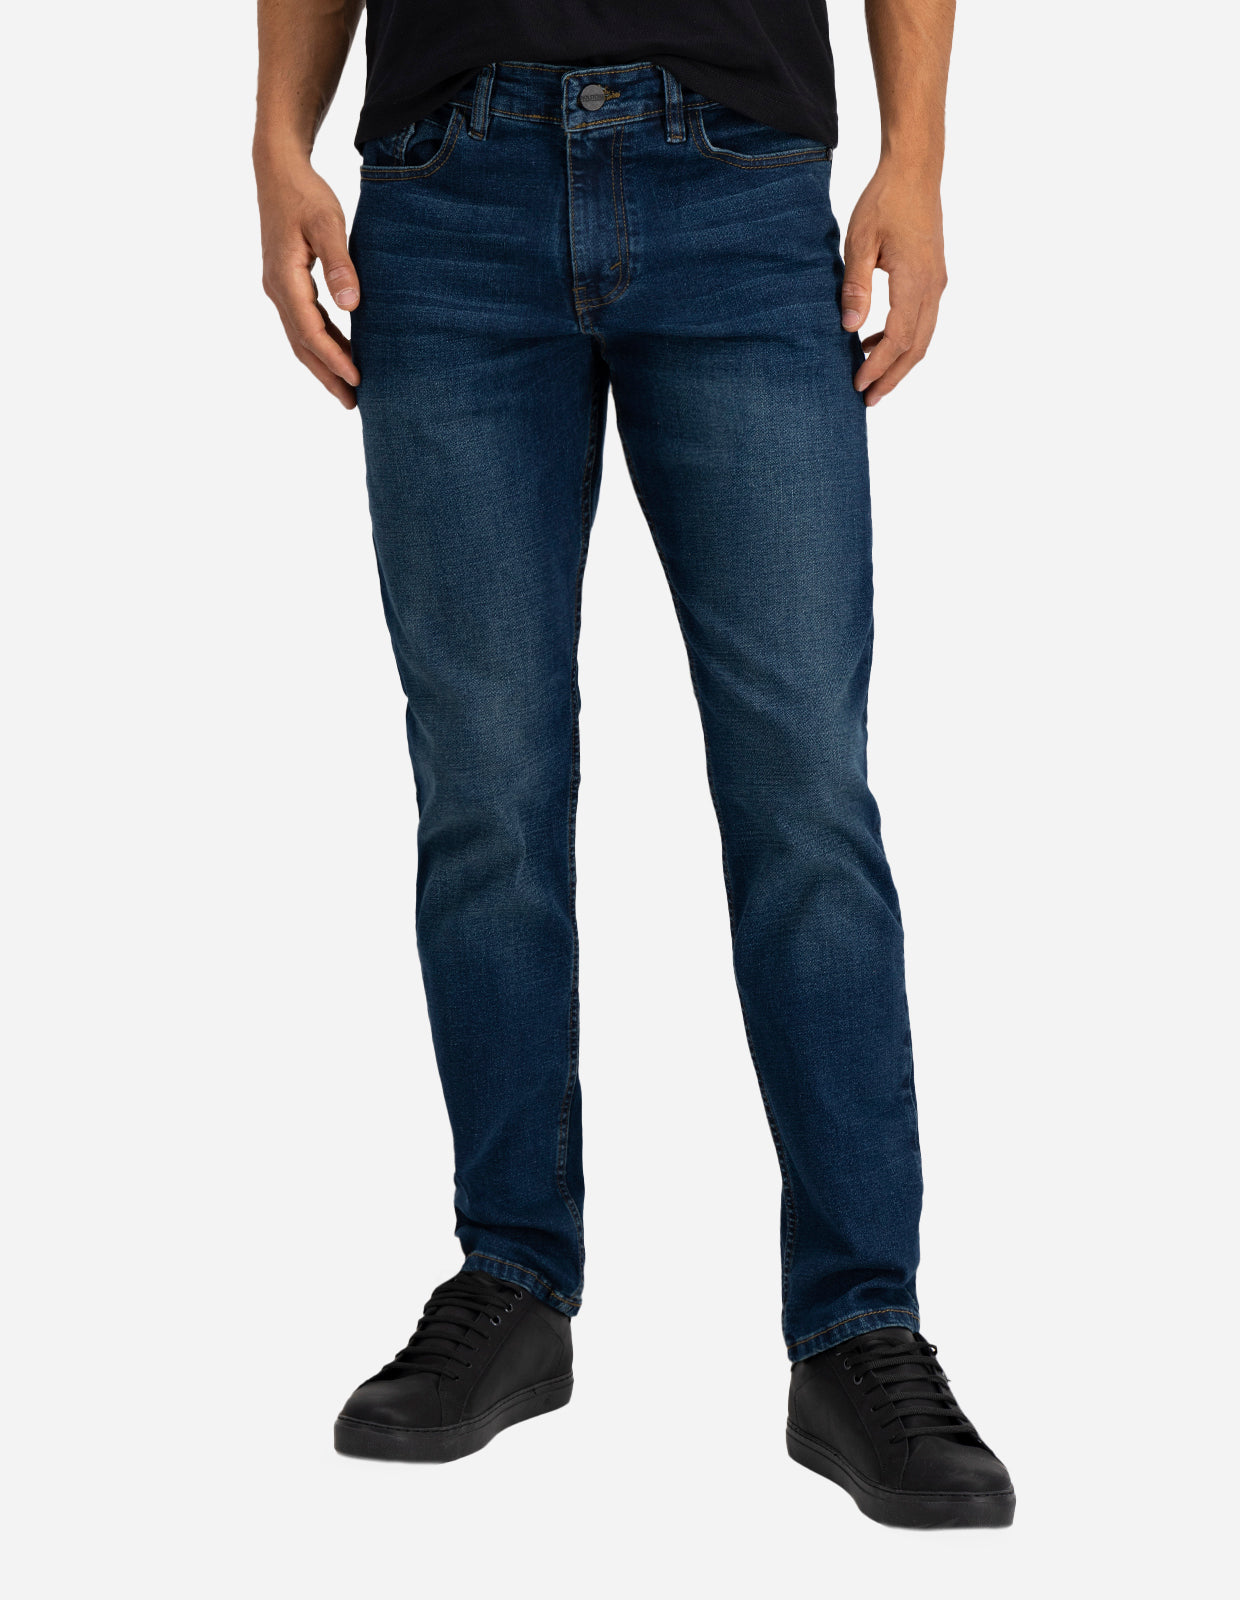 Jeans de Mezclilla Premium Slim Fit - Luanda